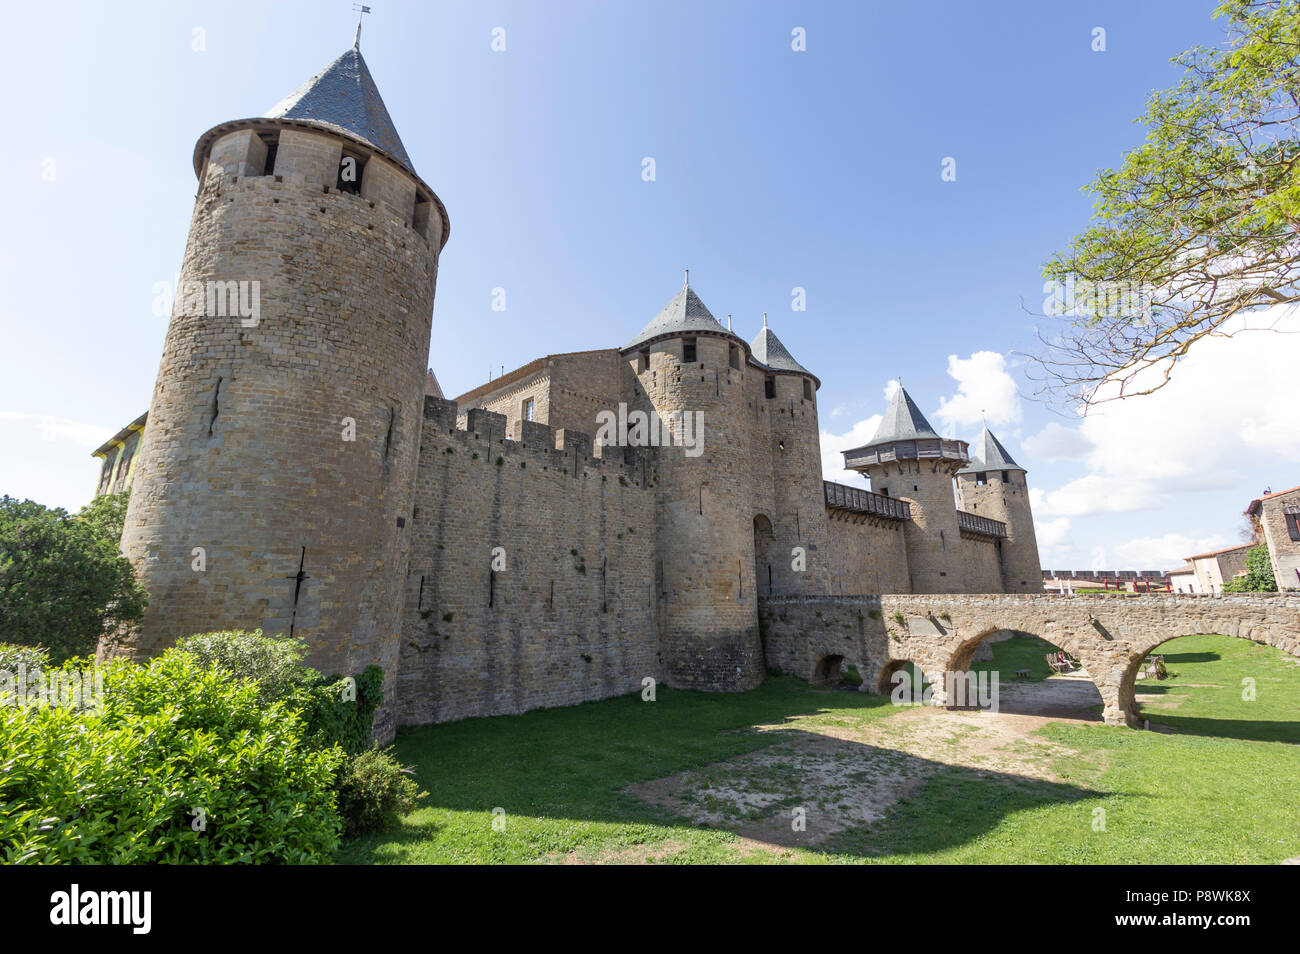 La Cité medievale di Carcassonne, dipartimento francese dell Aude, Regione Occitanie, Francia. Lo Château Comtal. Foto Stock